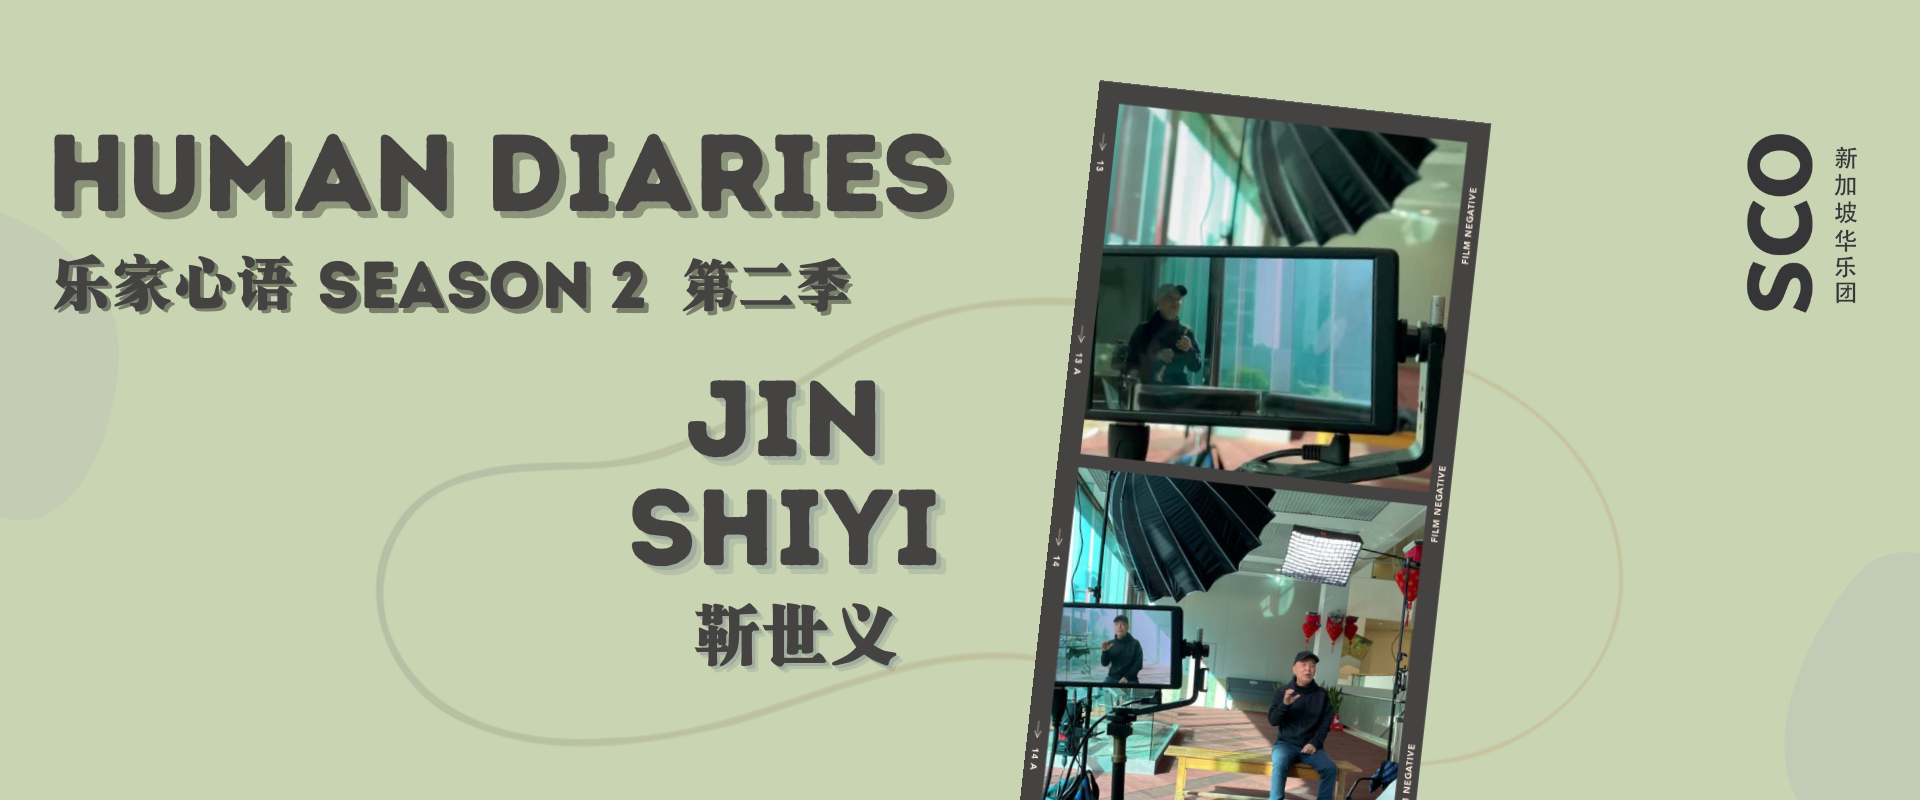 Jin_Shiyi Huayue Articles